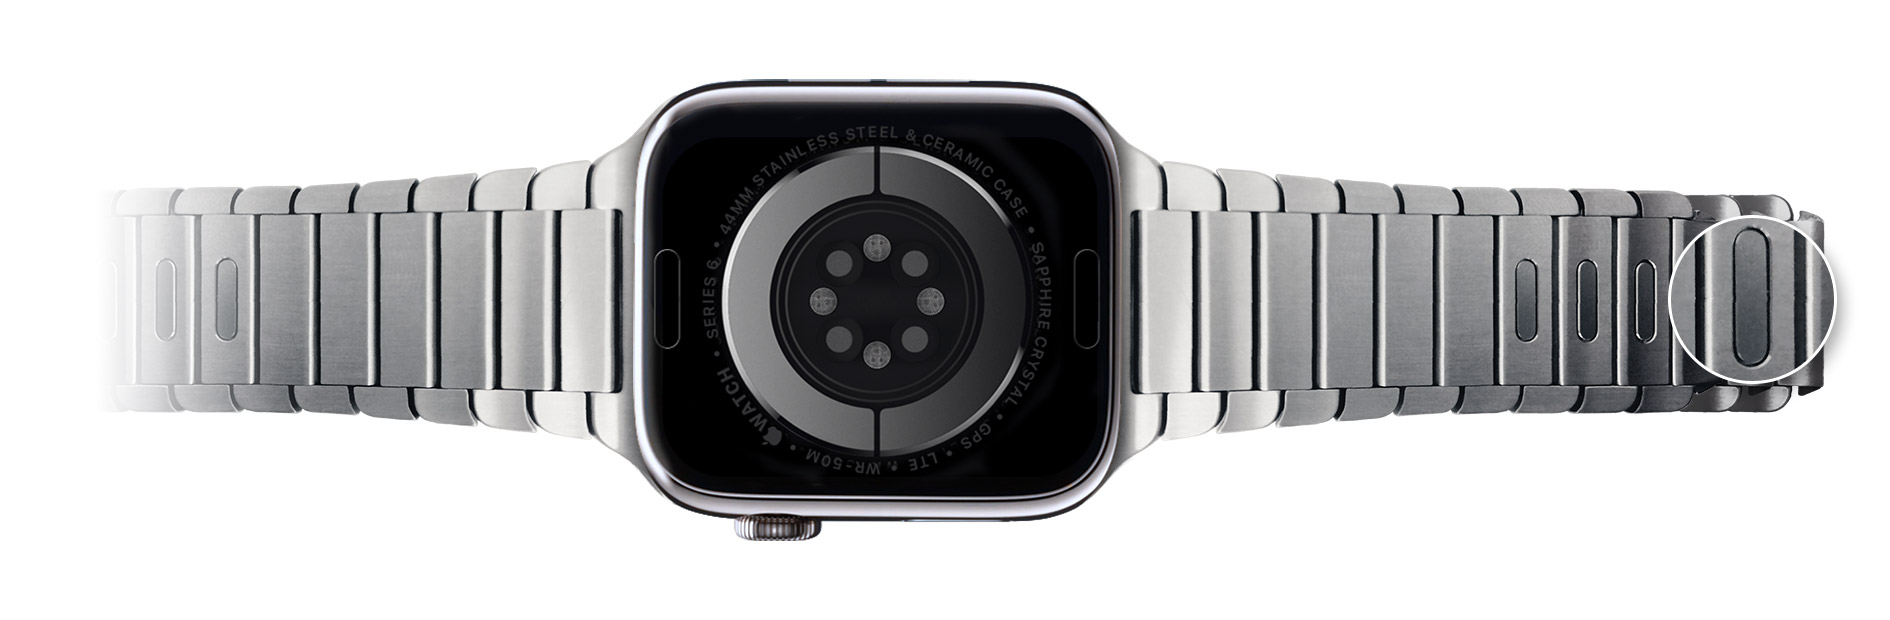 Mengganti tali Apple Watch - Apple Support (ID)